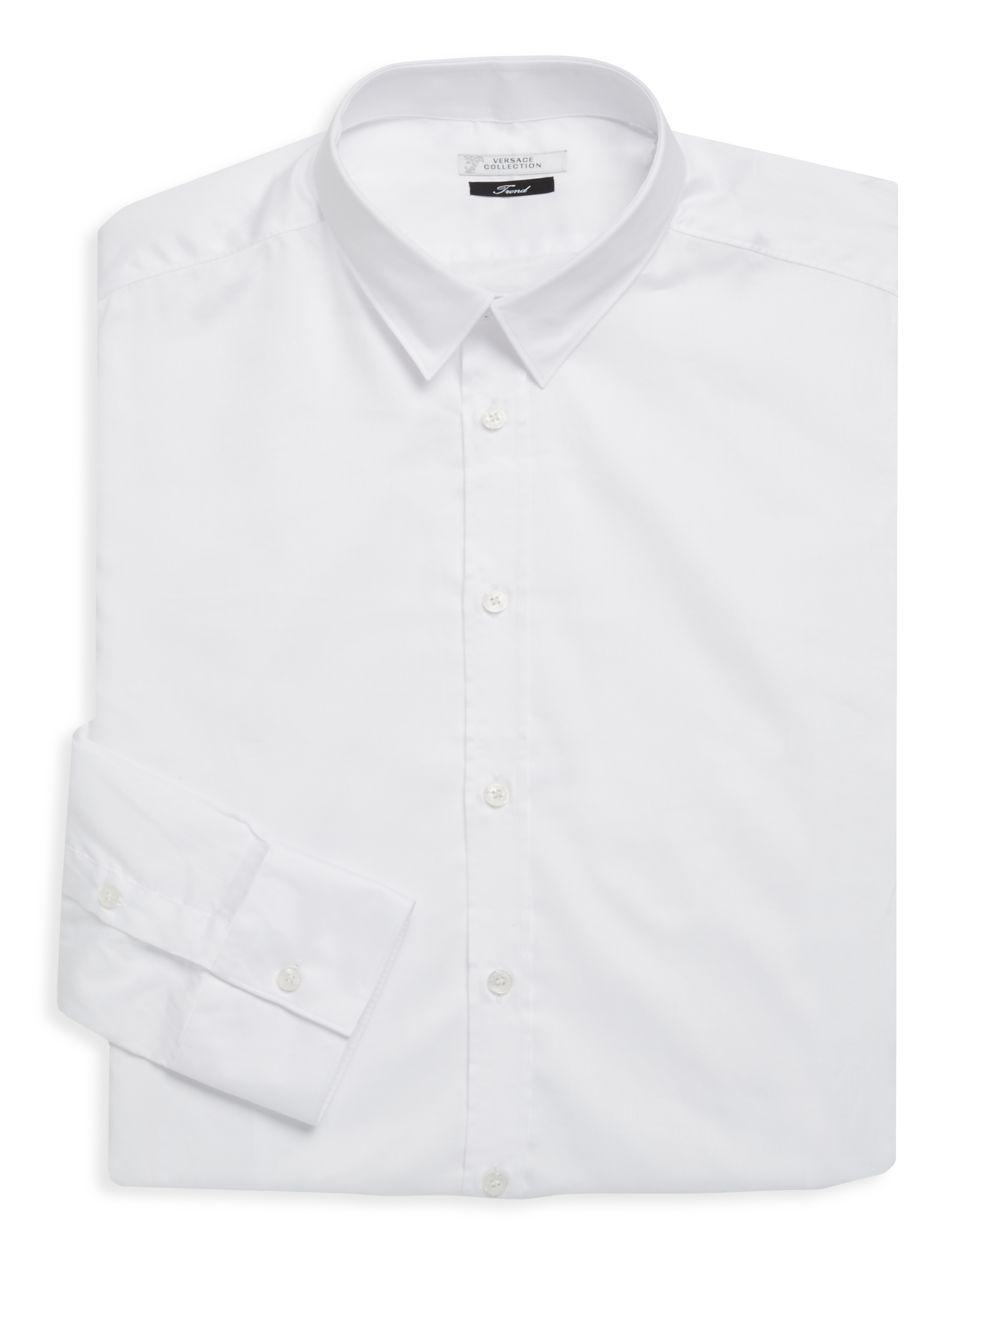 versace white dress shirt